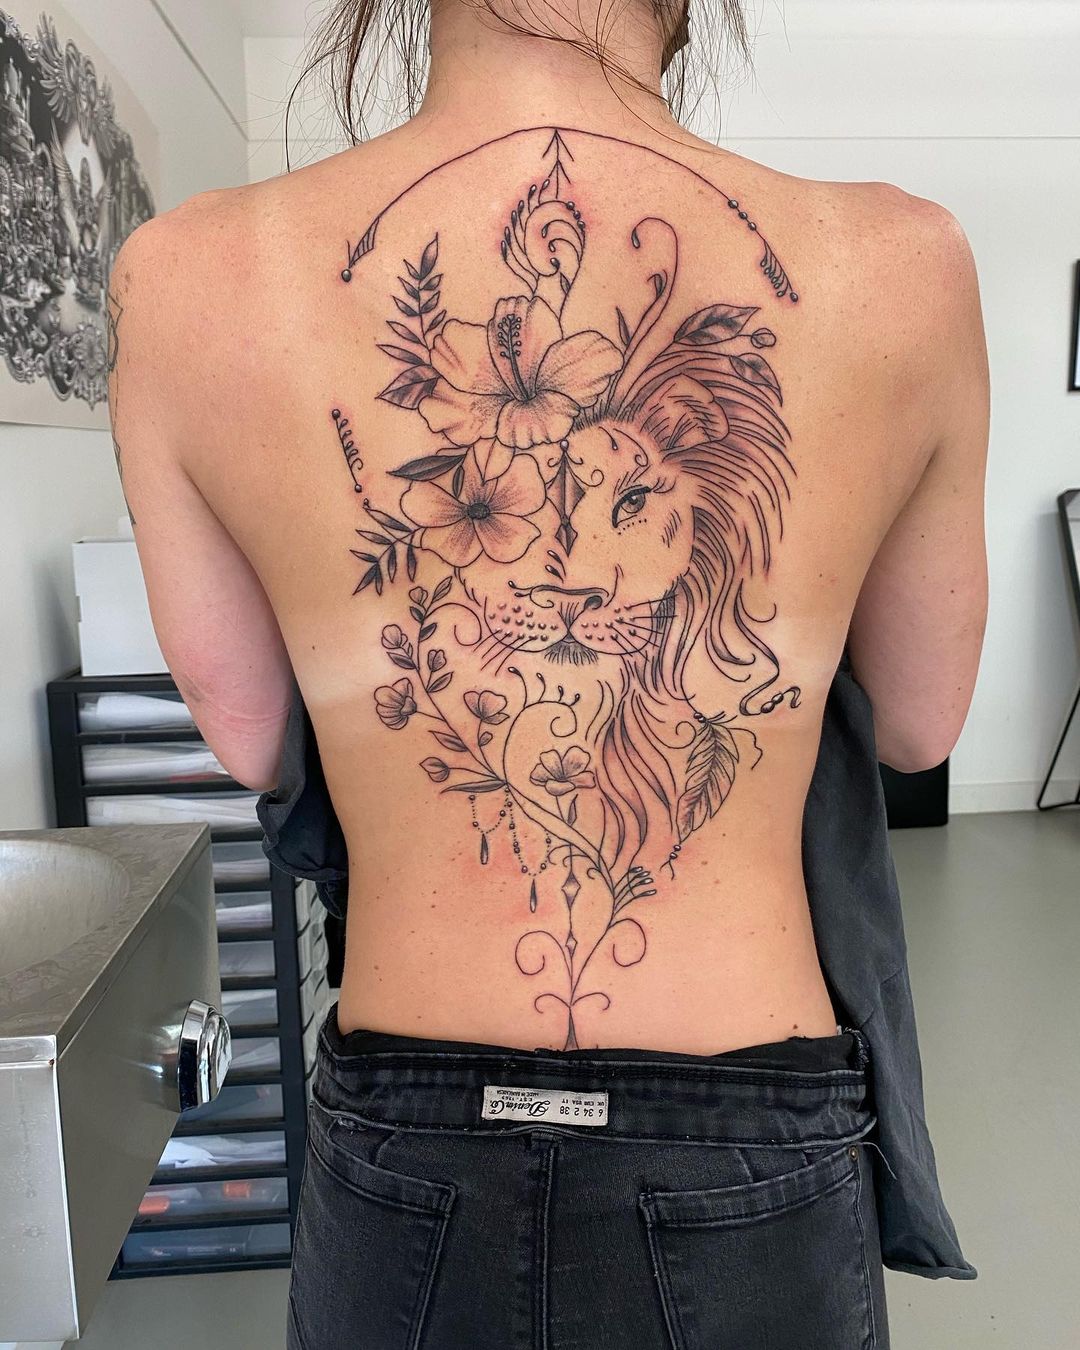 Tatuaje de un león en la espalda